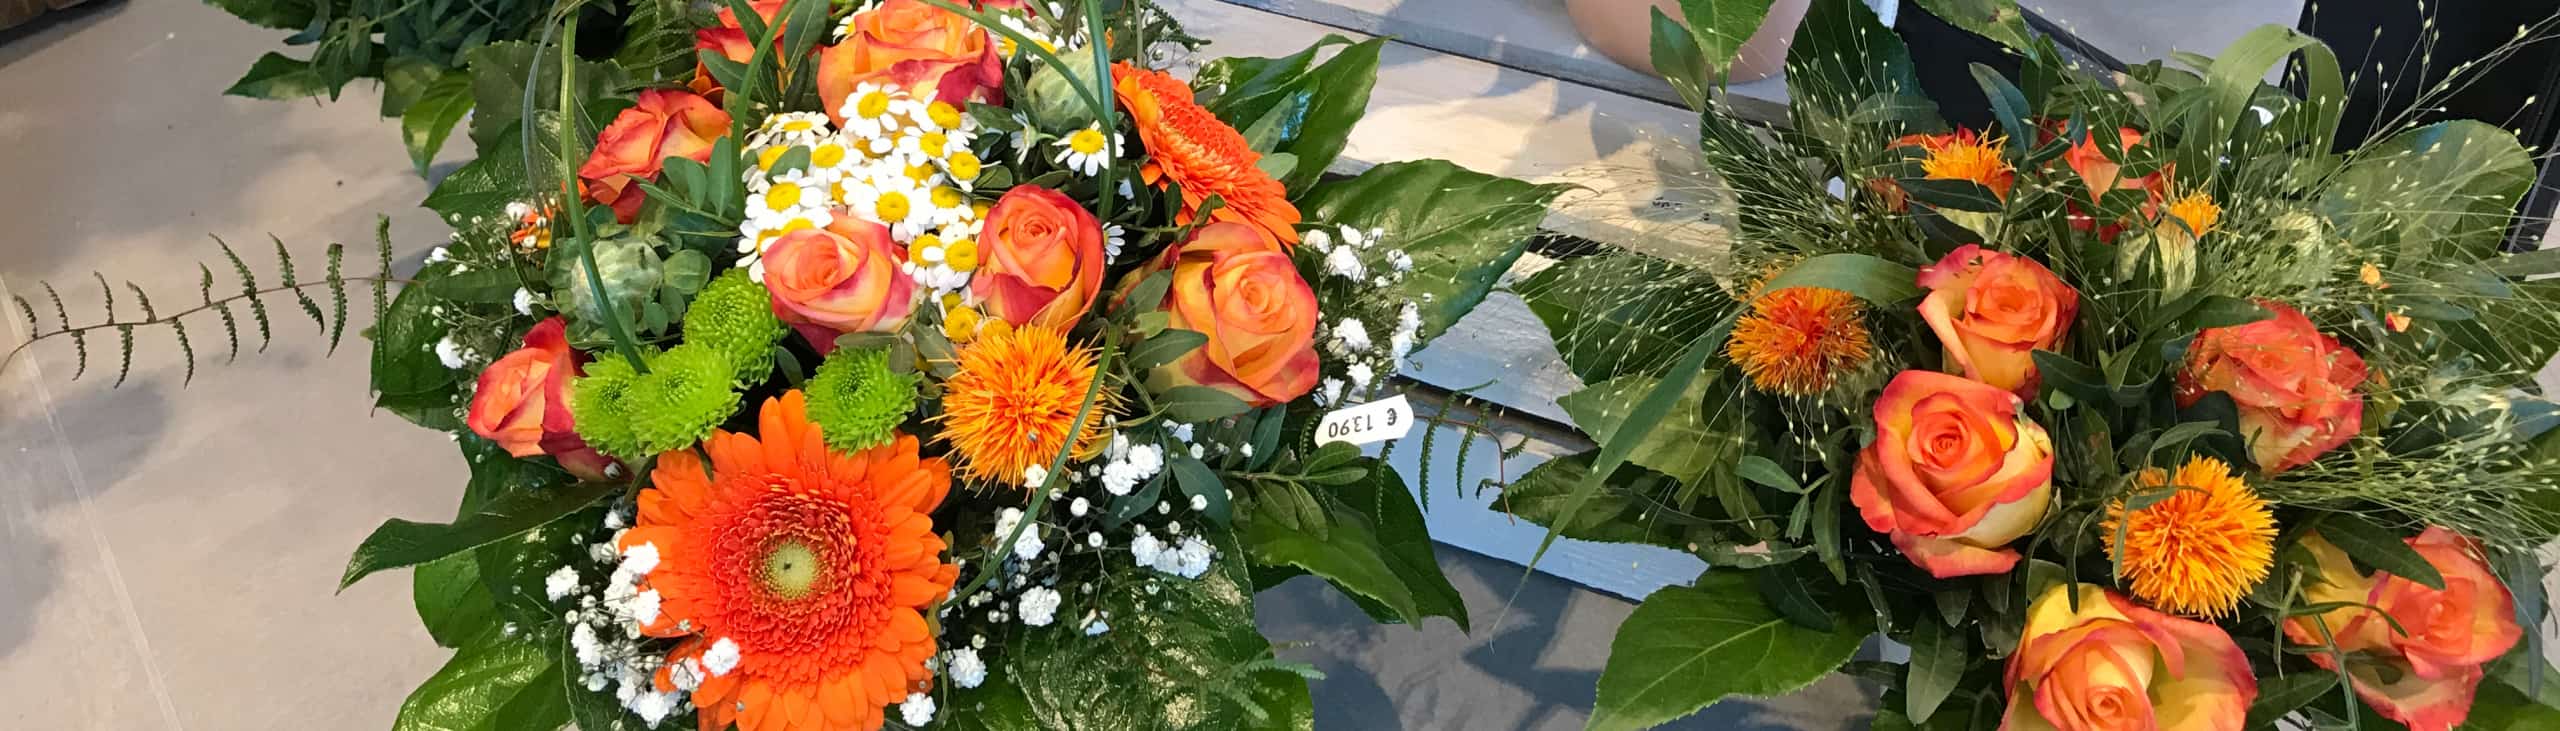 Fünf verschieden gebundene Blumensträuße in orange Tönen